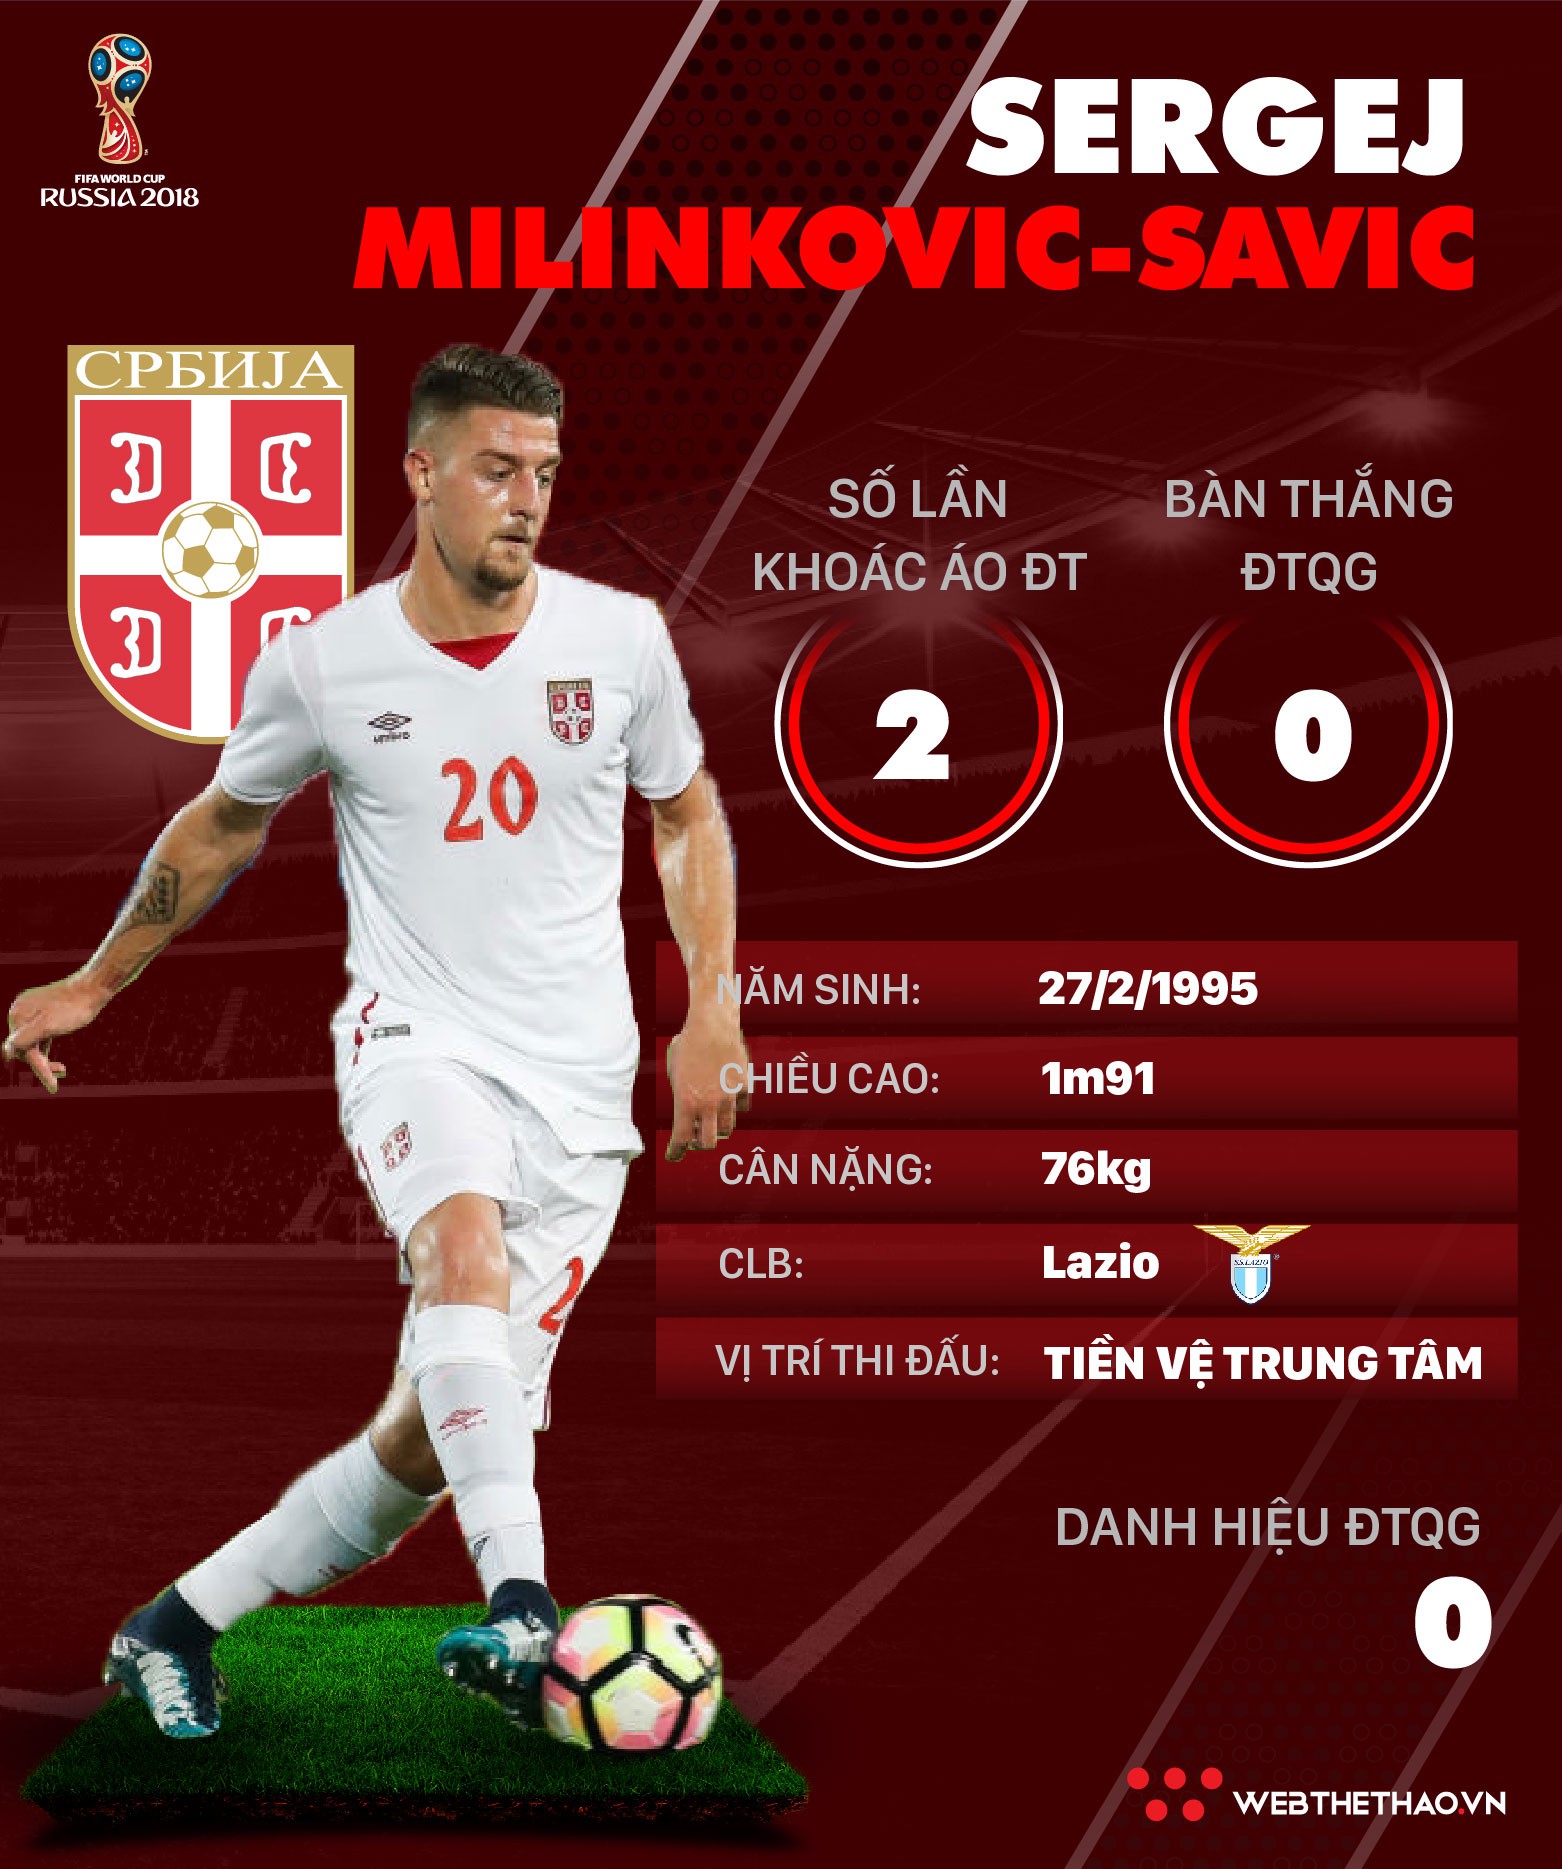 Thông tin cầu thủ Sergej Milinkovic-Savic của ĐT Serbia dự World Cup 2018 - Ảnh 1.